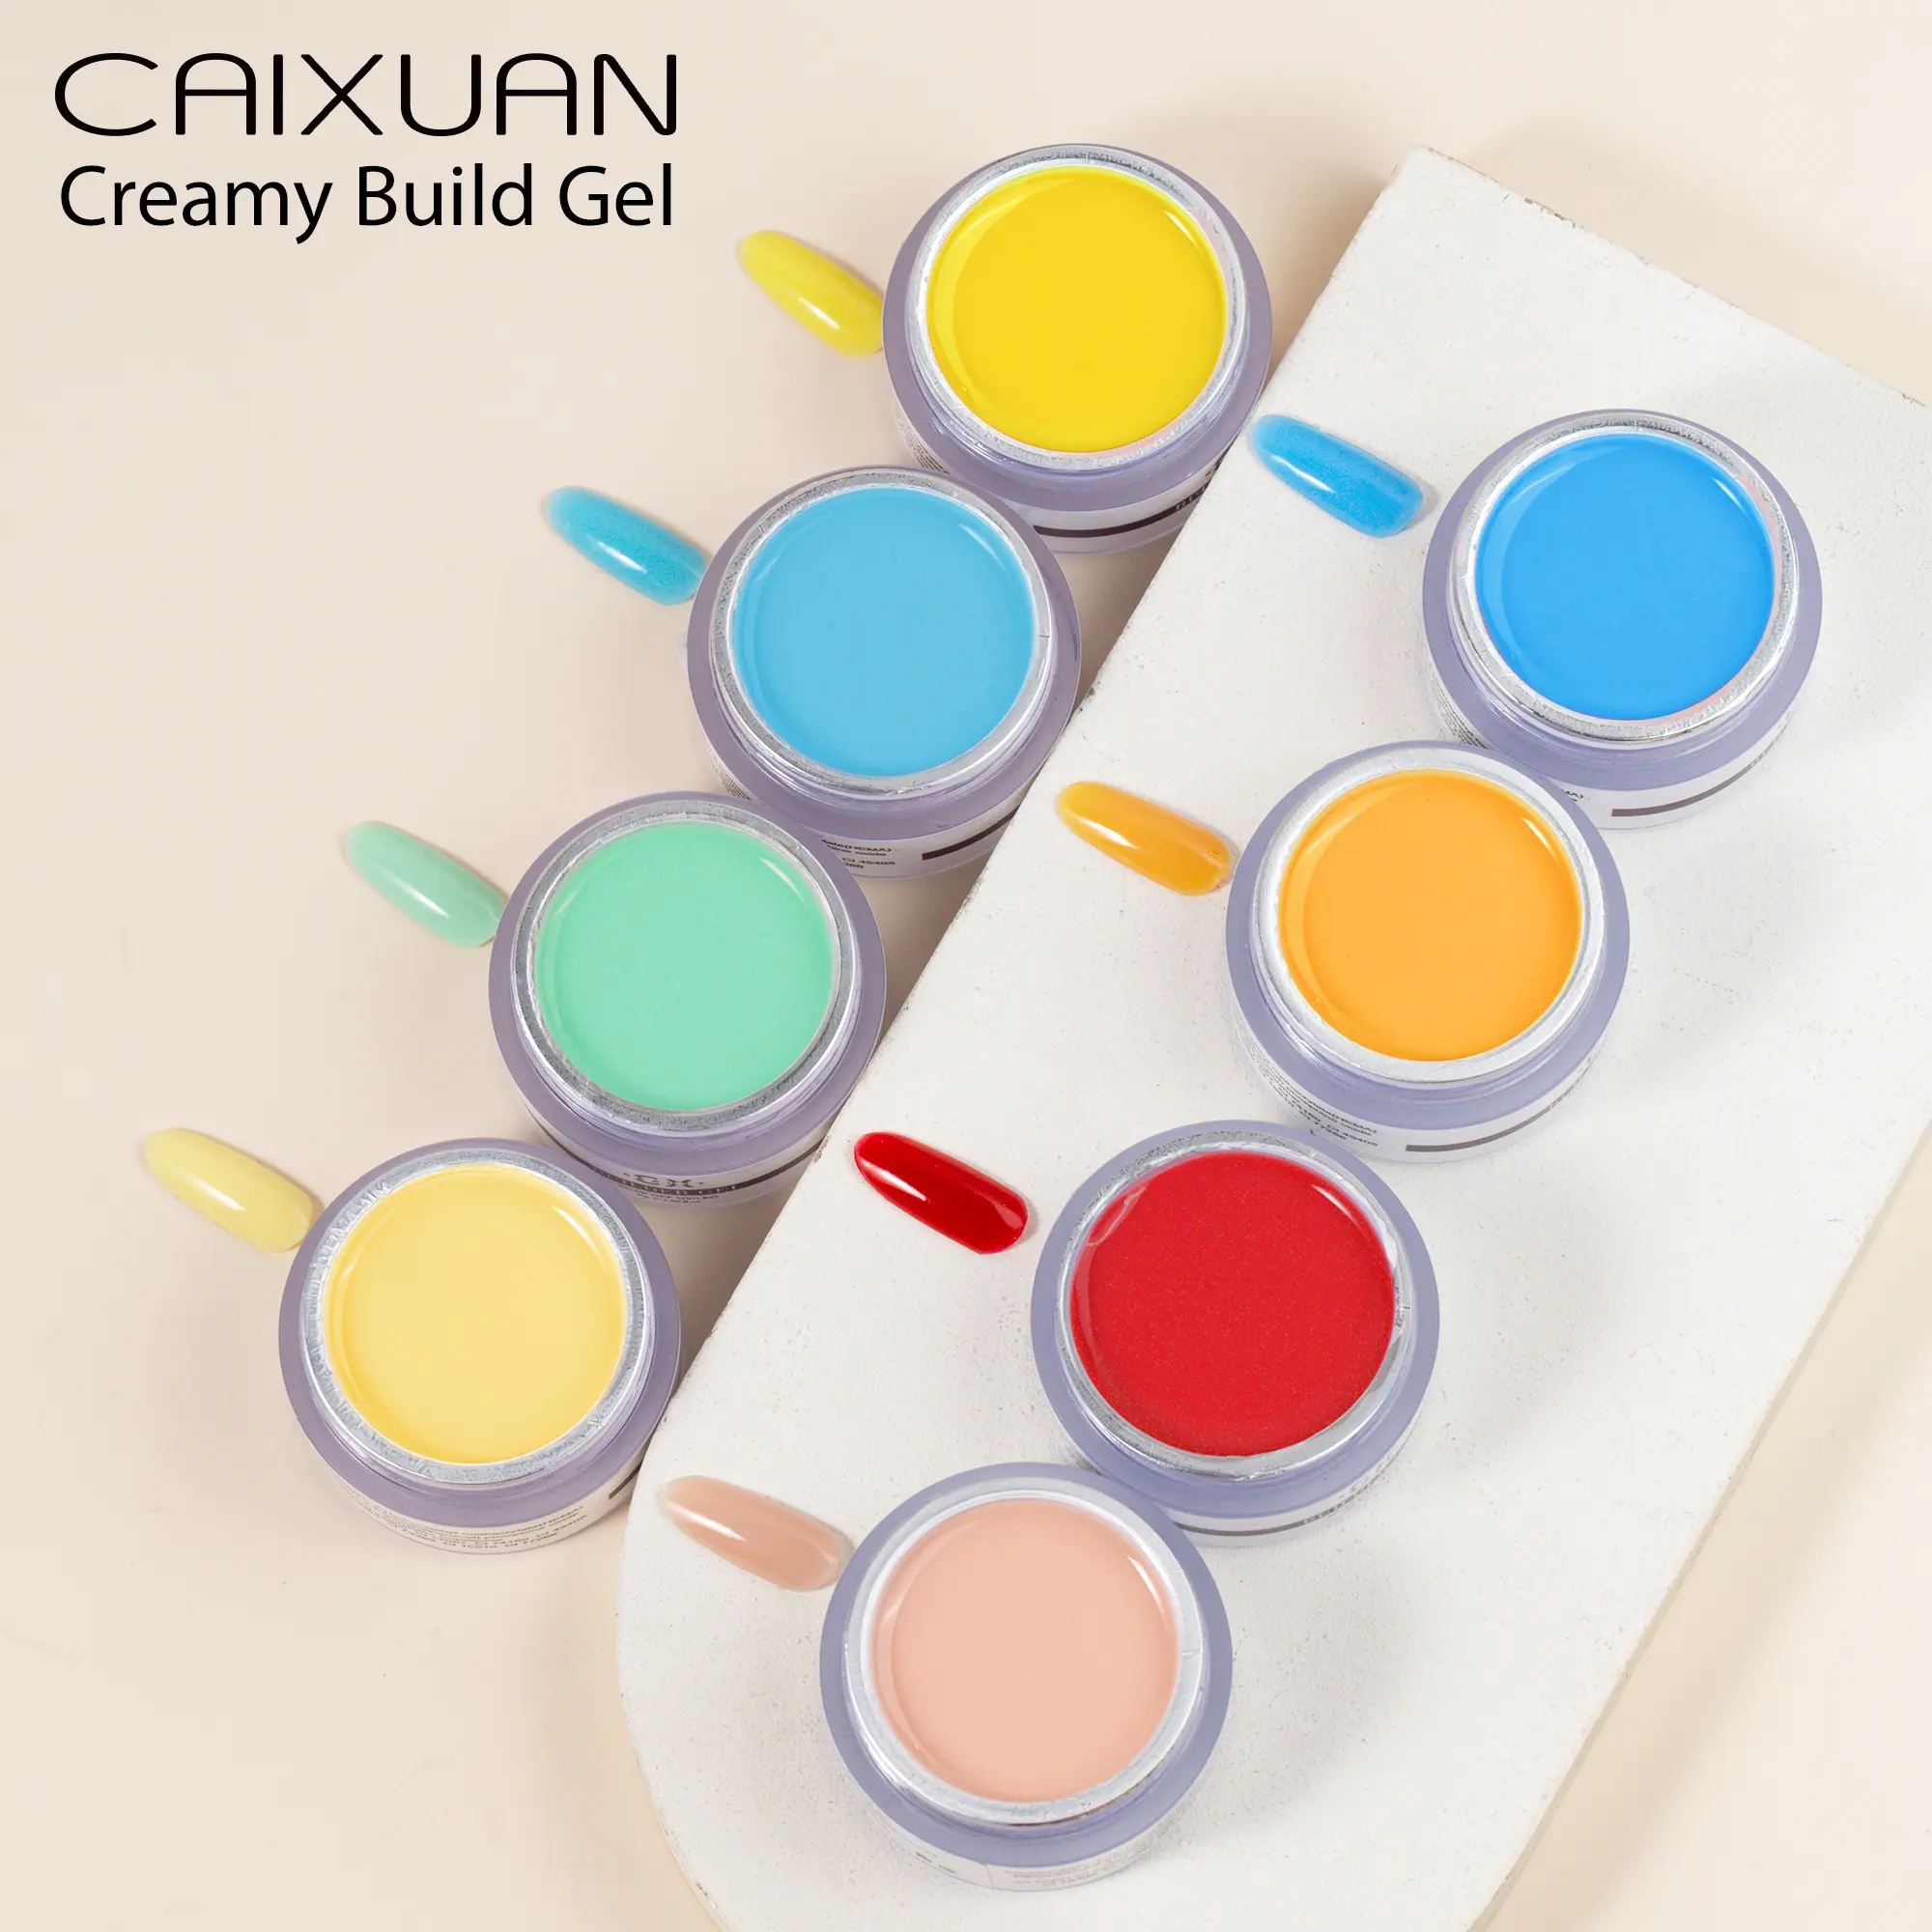 Caixuan gel colorato cremoso costruire gel di estensione per unghie autolivellante per nail art